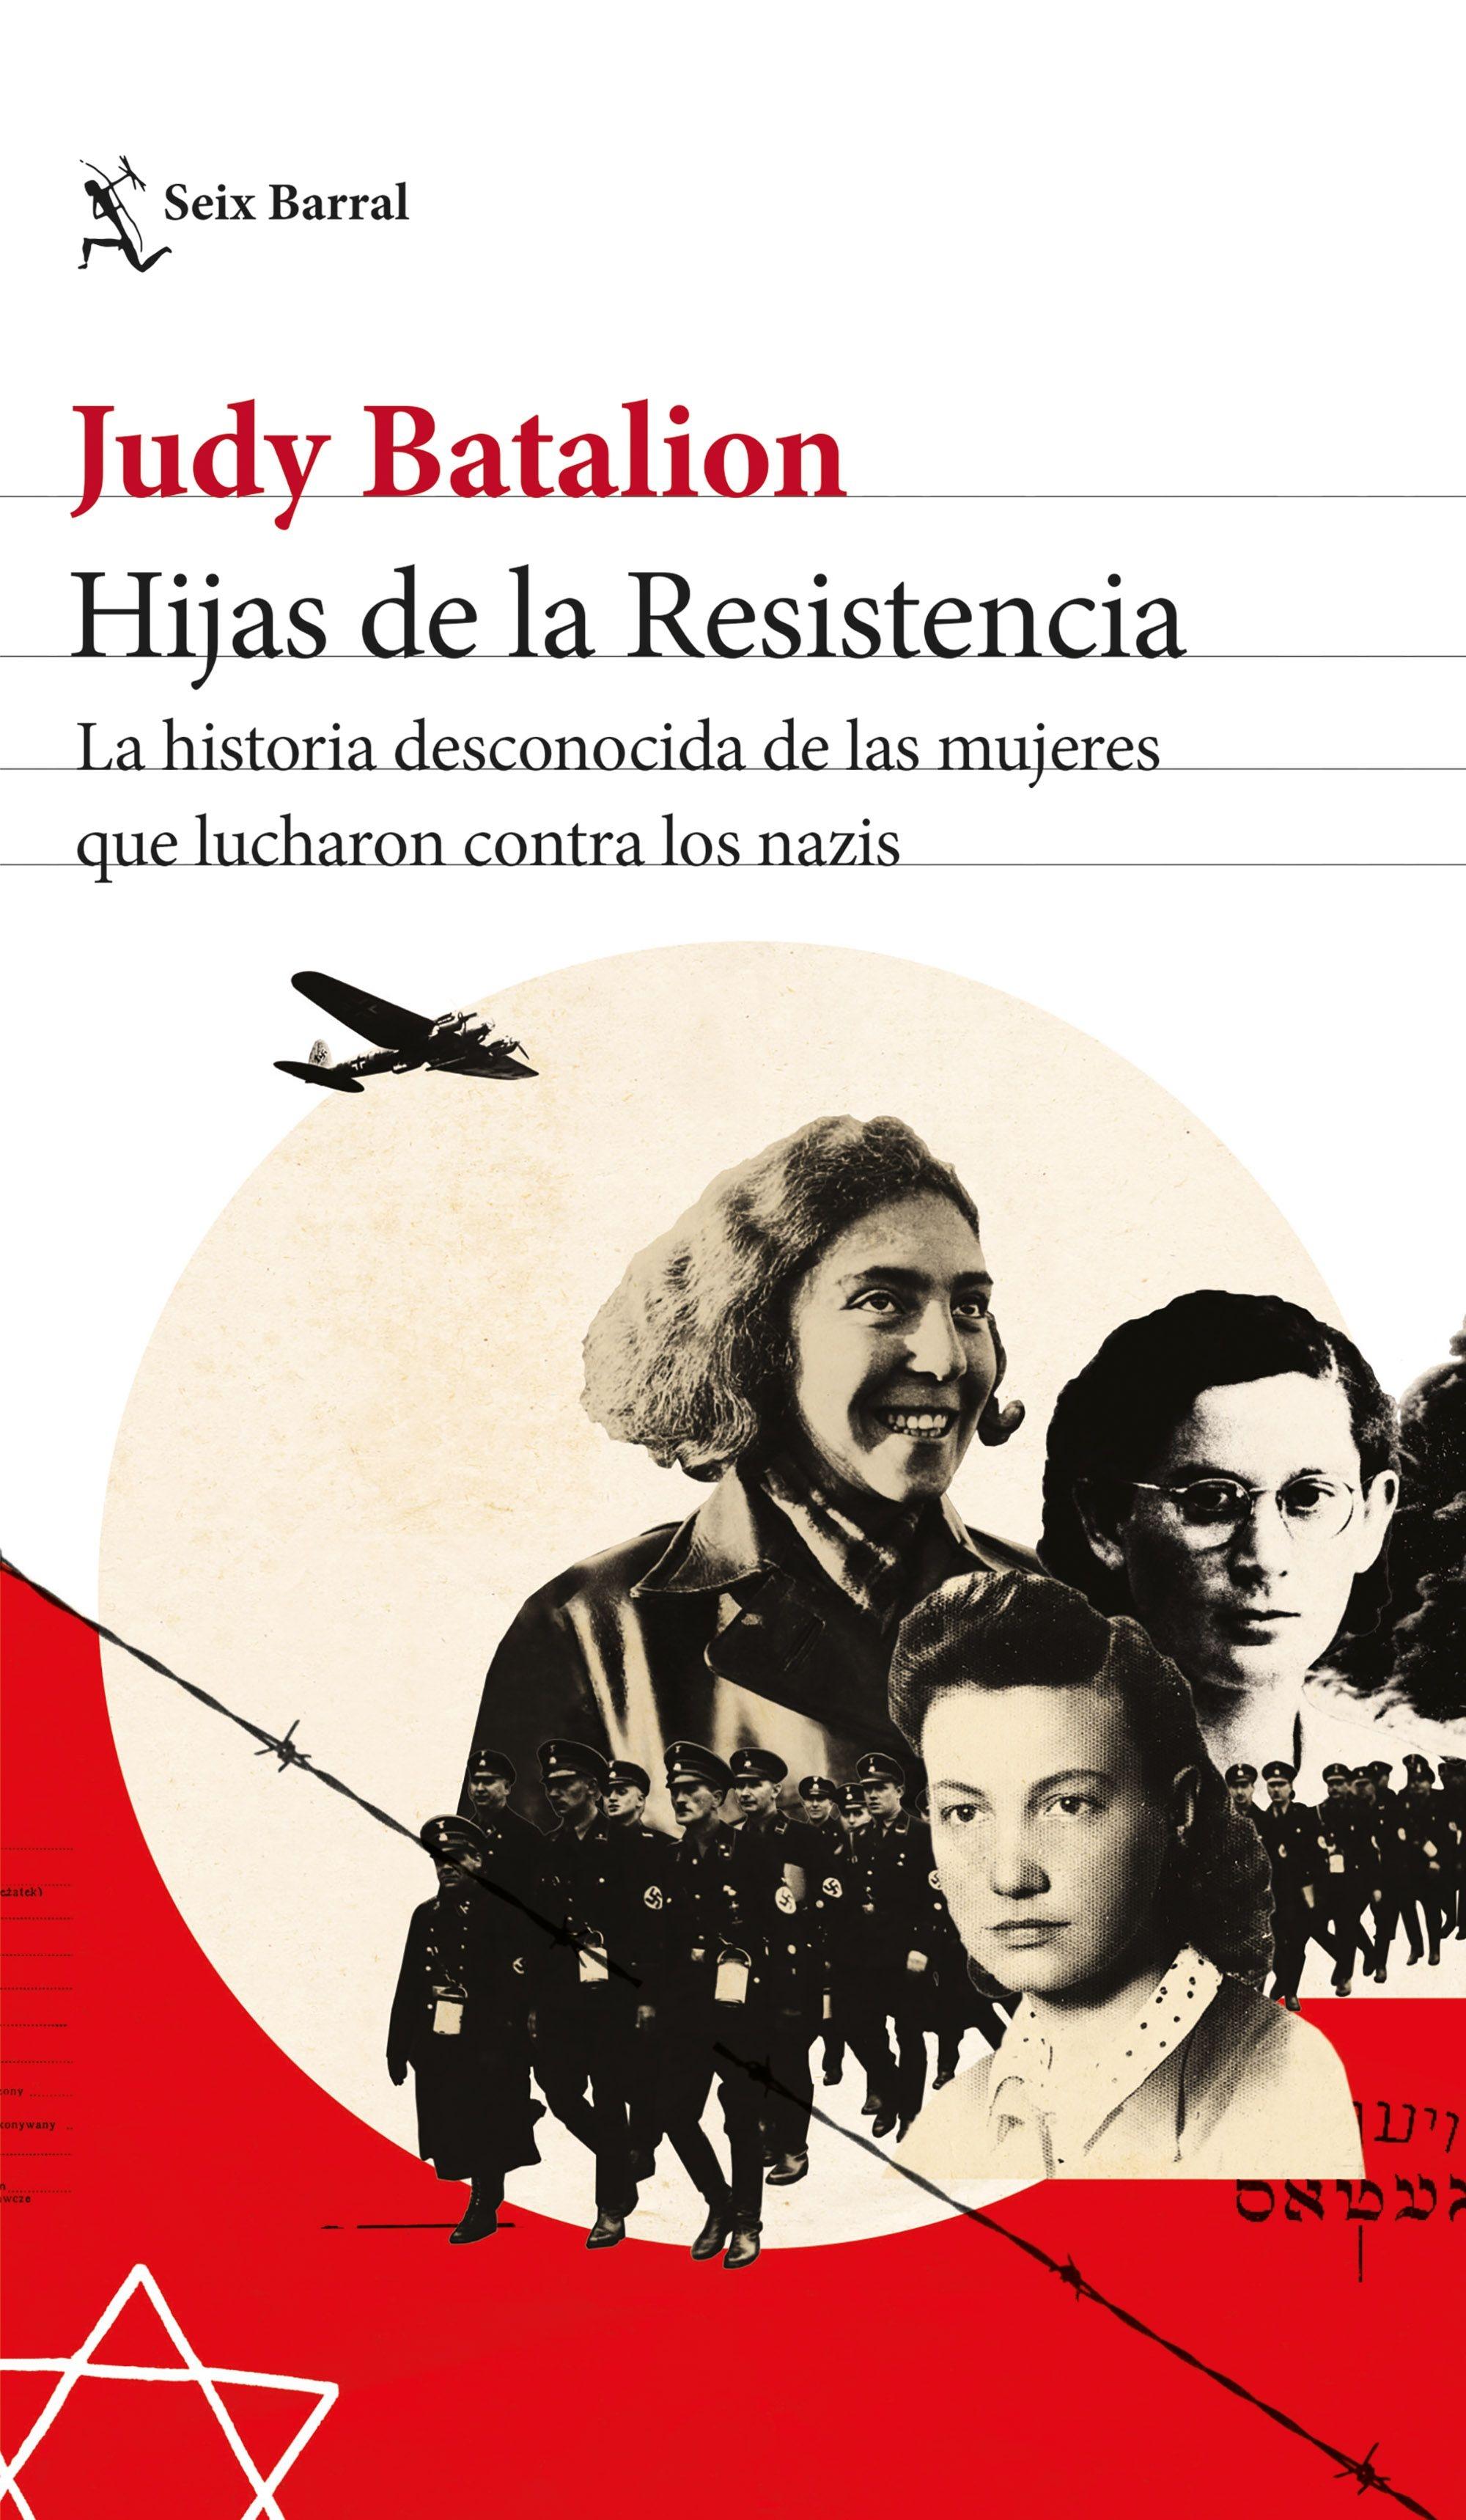 Hijas de la Resistencia "La historia desconocida de las mujeres que lucharon contra los nazis"